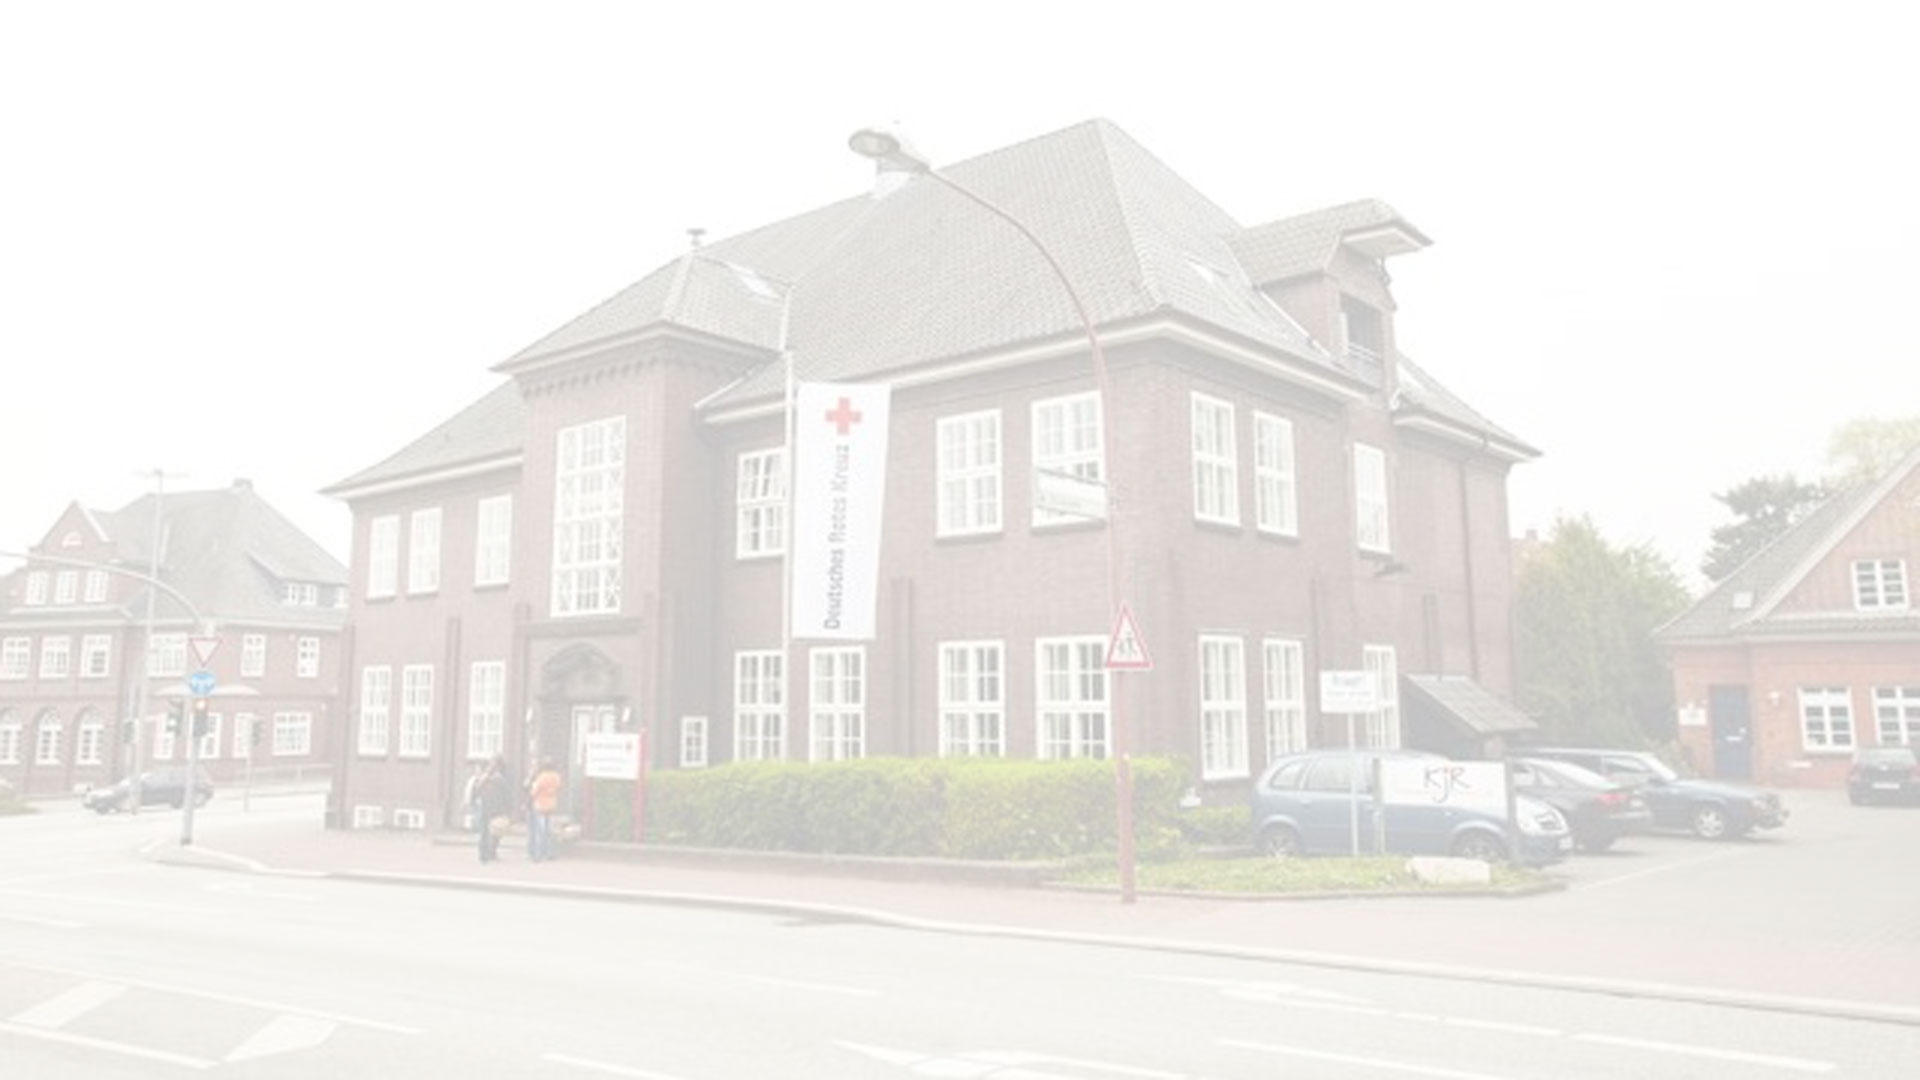 DRK Stormarn - German Red Cross DRK Stormarn